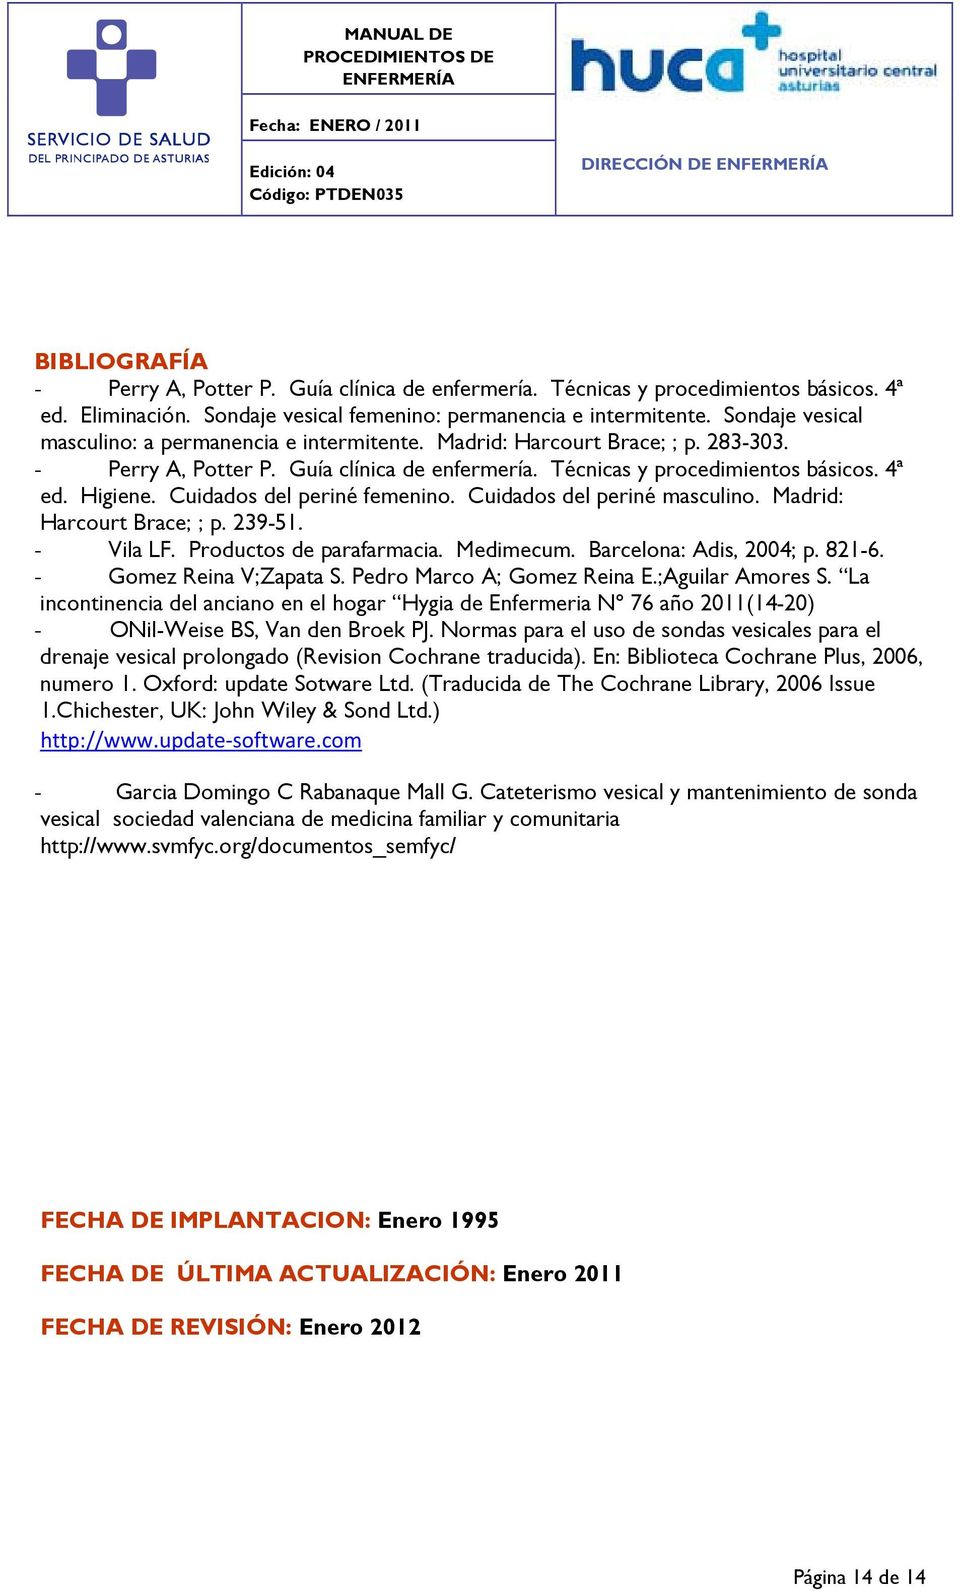 Cuidados del periné femenino. Cuidados del periné masculino. Madrid: Harcourt Brace; ; p. 239-51. - Vila LF. Productos de parafarmacia. Medimecum. Barcelona: Adis, 2004; p. 821-6.